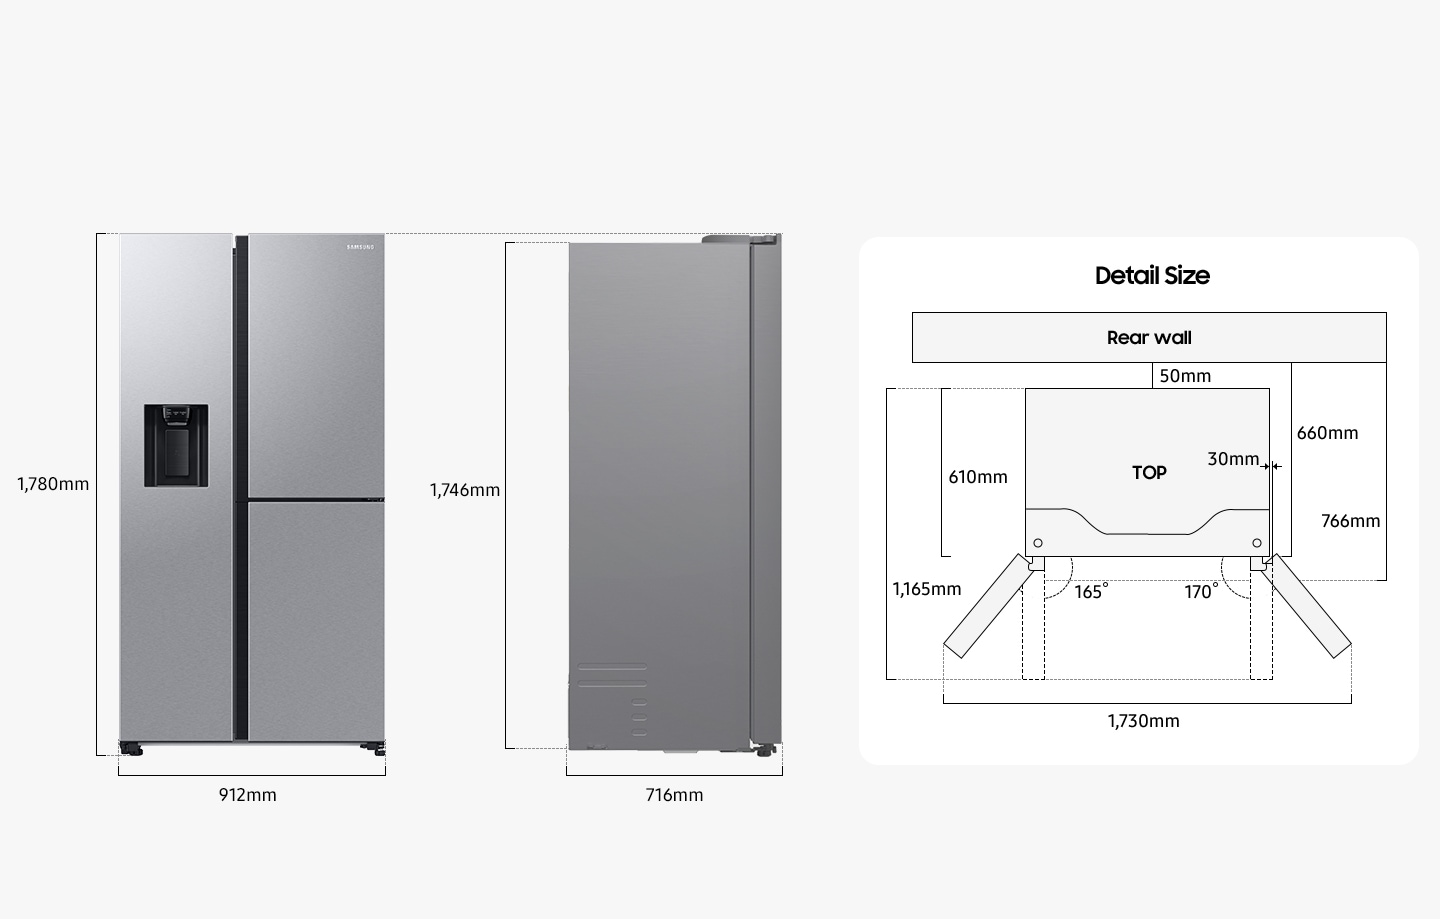 Il frigorifero ha un'altezza di 1.780 mm compresa la porta, 912 mm di larghezza, 716 mm di profondità e 1.746 mm di altezza esclusa la porta dal retro. Durante l'installazione, il frigorifero deve trovarsi ad almeno 50 mm di distanza dalla parete posteriore. La profondità, compreso lo spazio tra il frigorifero e la parete posteriore e il corpo del frigorifero, è di 660 mm e la profondità, compreso lo spazio tra il frigorifero e la parete posteriore e il corpo del frigorifero e la porta del frigorifero, è di 766 mm. La profondità del frigorifero installato esclusa la porta chiusa è di 610 mm e la profondità del frigorifero installato, inclusa la porta aperta a 90 gradi, è di 1.165 mm e anche la porta del frigorifero sporge di 30 mm dal corpo del frigorifero. La porta destra si apre a 165 gradi e la porta sinistra si apre a 170 gradi. La larghezza quando entrambe le porte sono completamente aperte è di 1.730 mm.